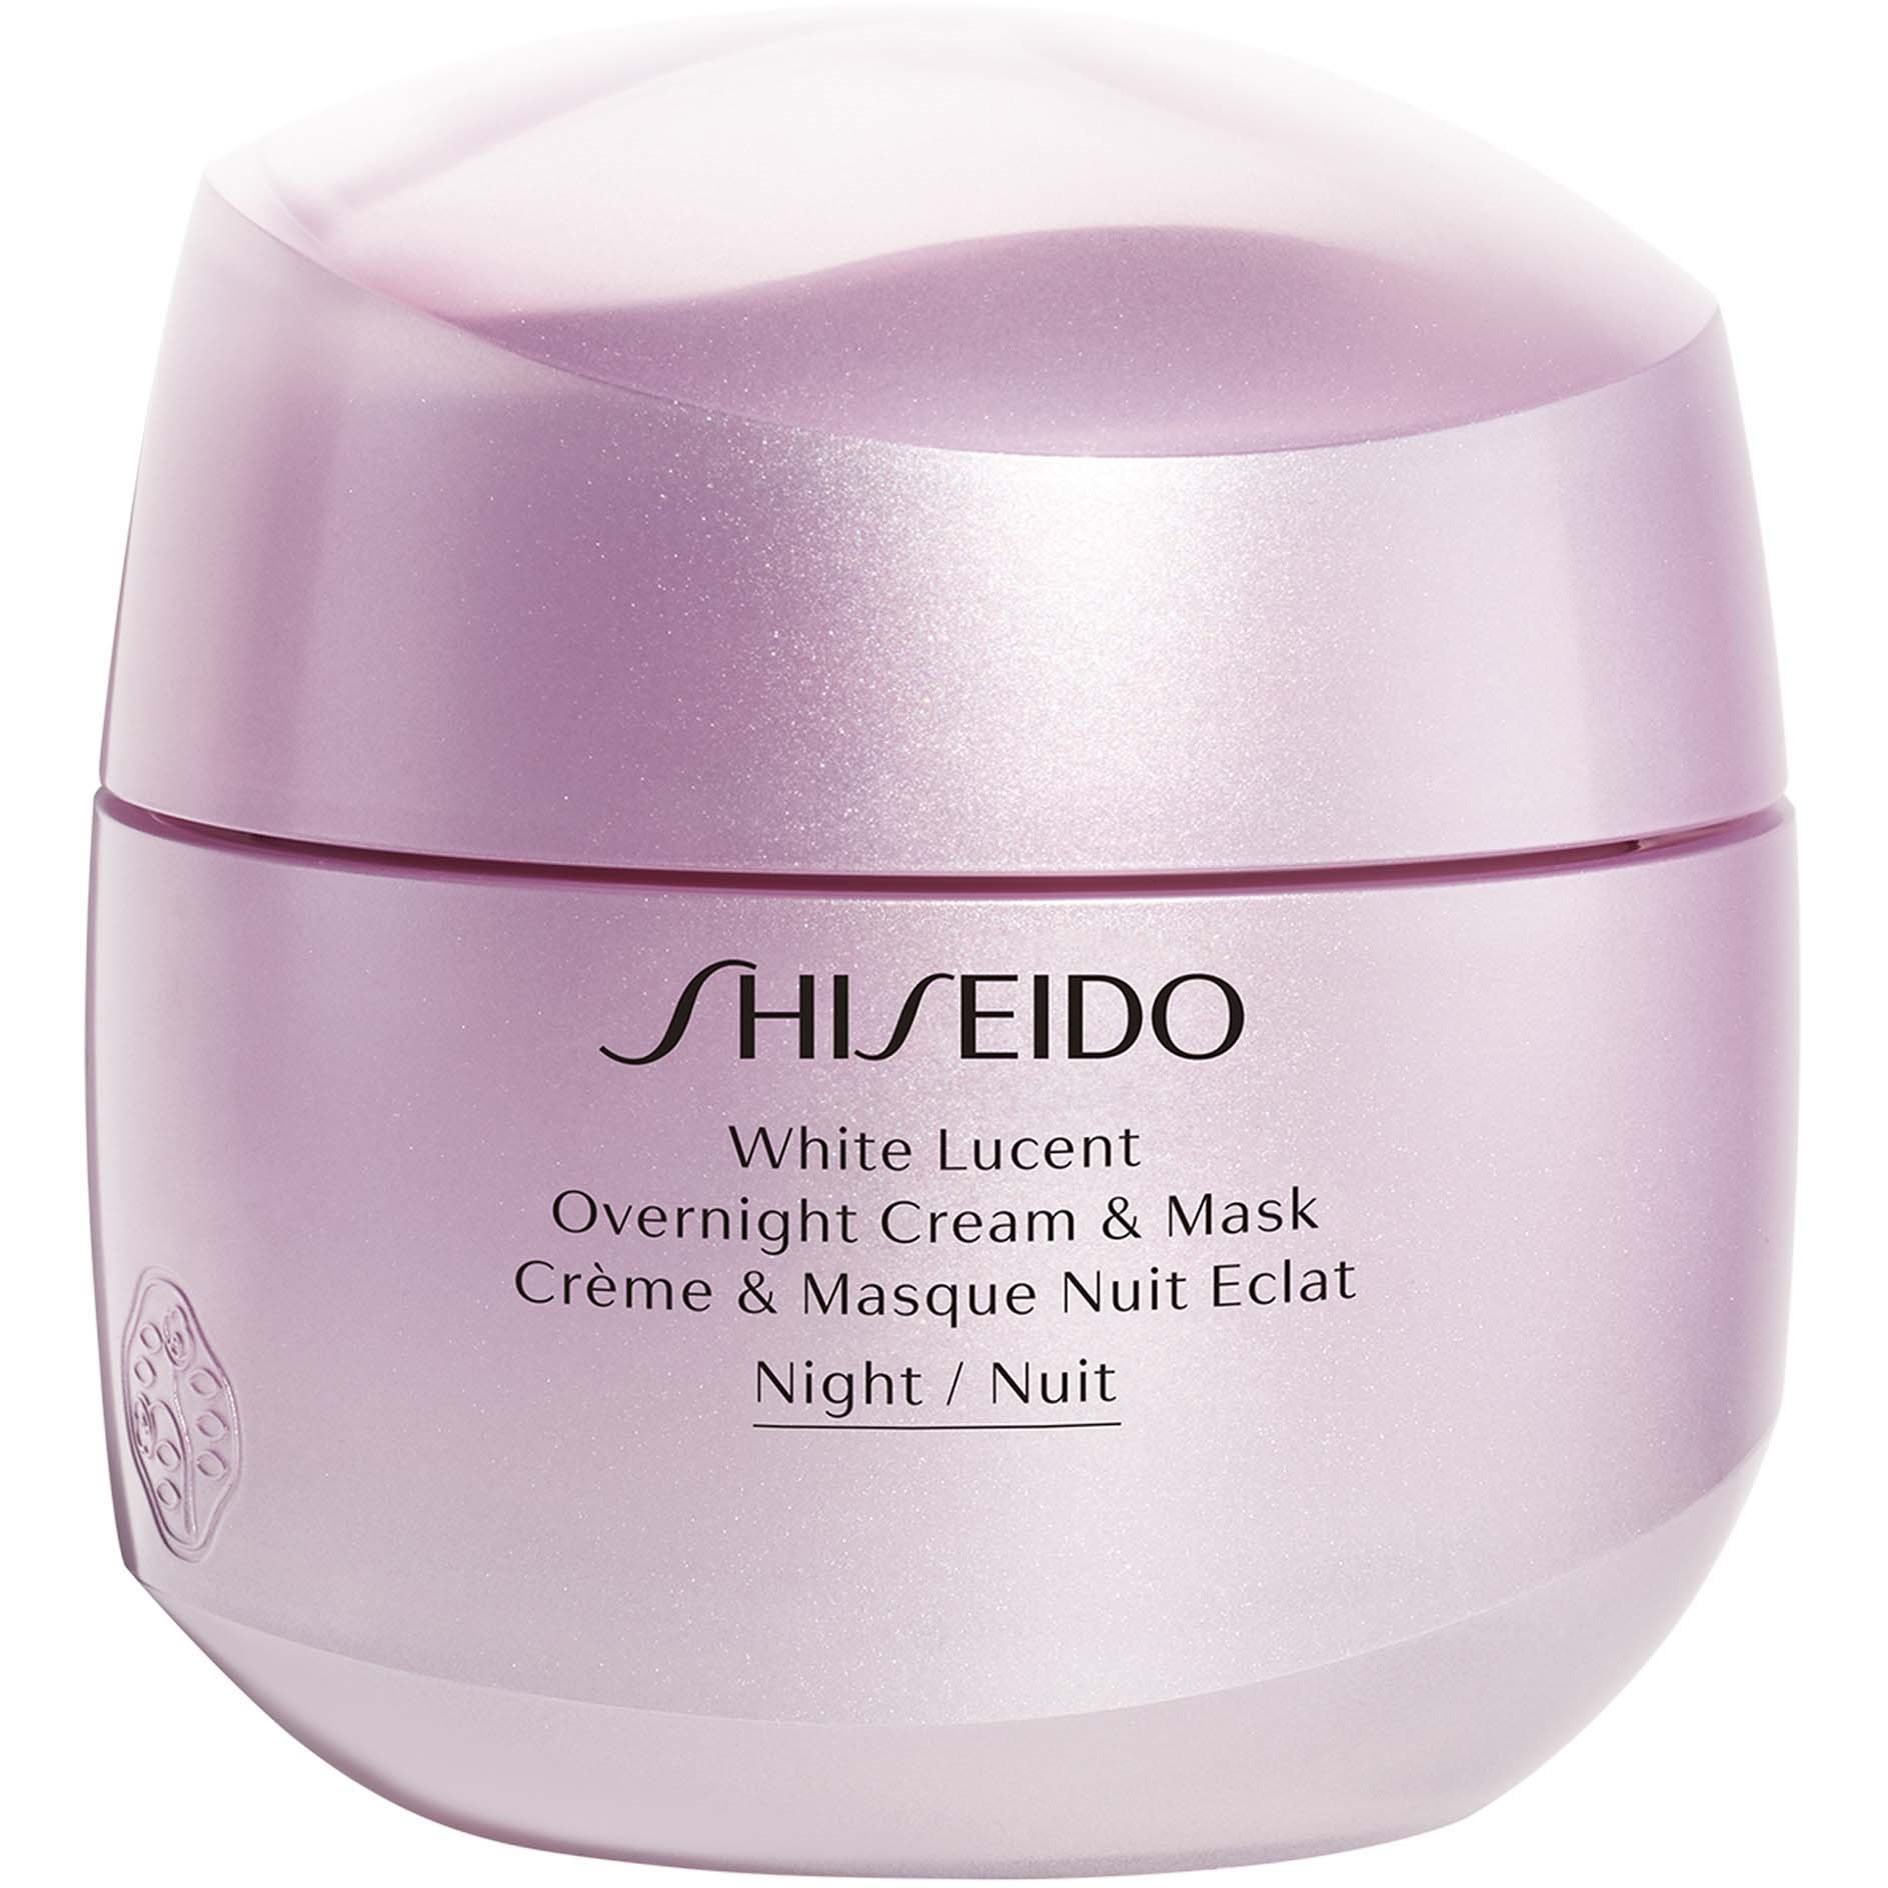 Bilde av Shiseido White Lucent Overnight Cream & Mask 75 Ml